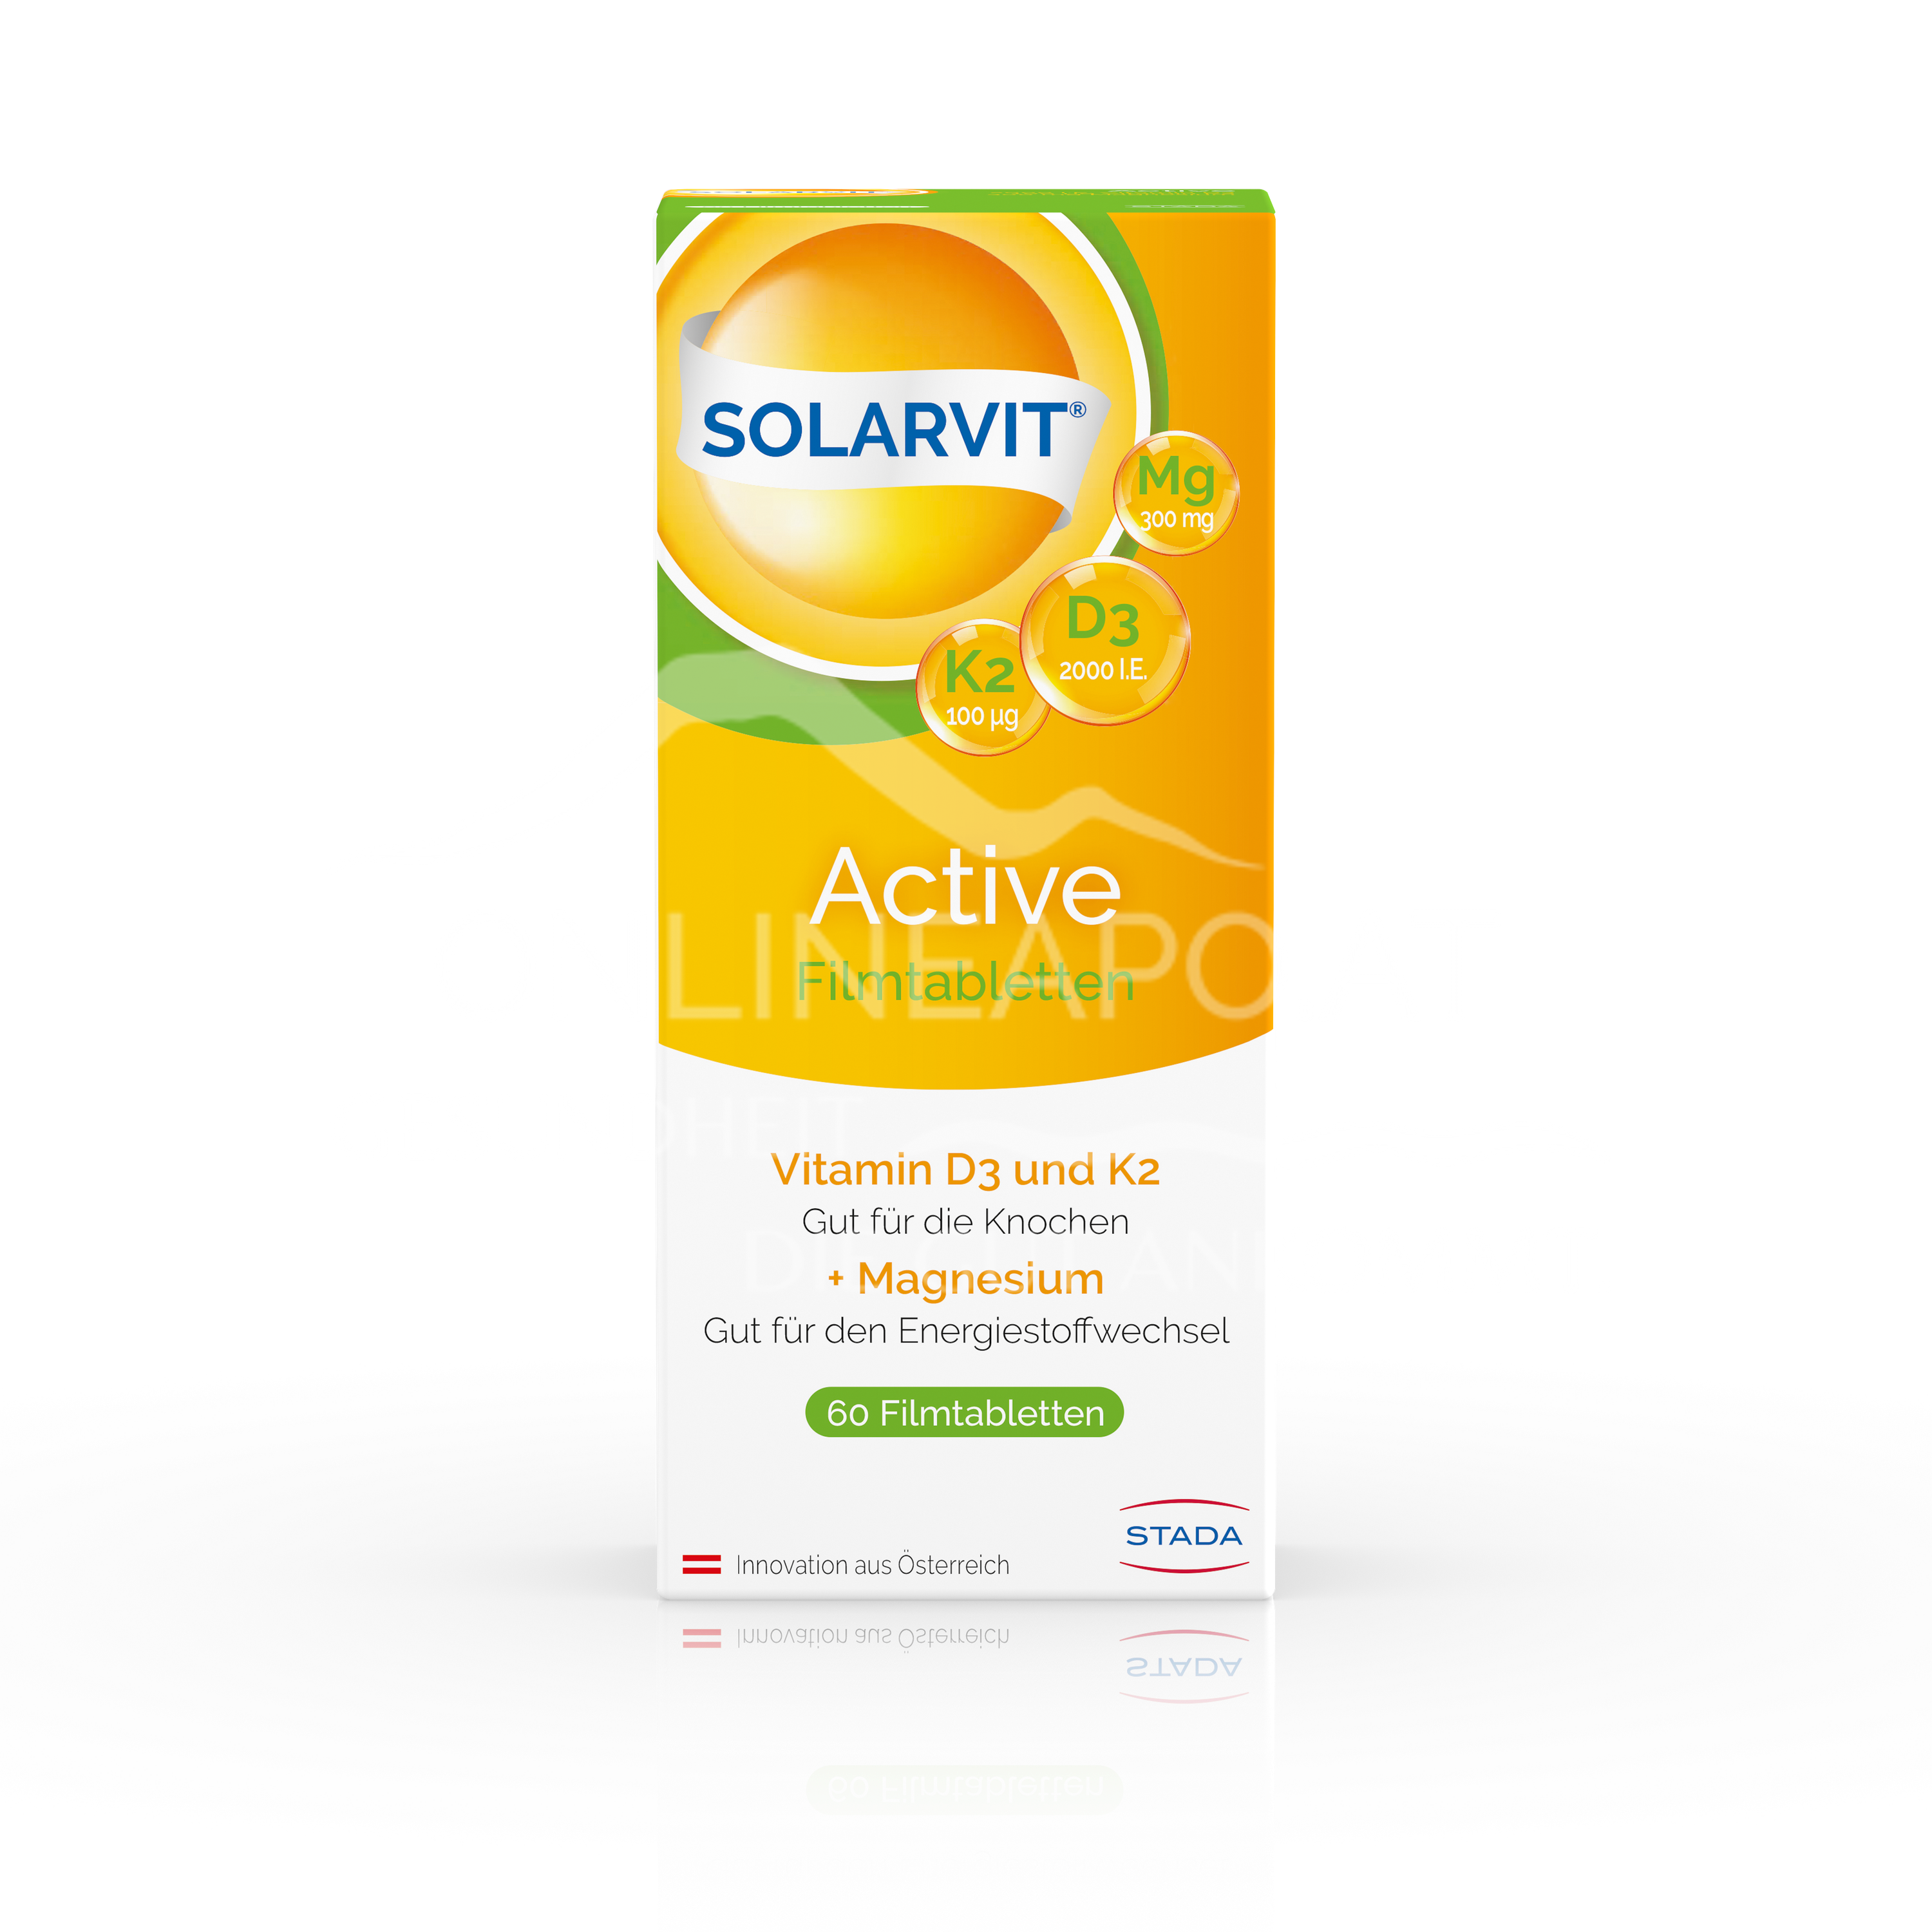 SOLARVIT® Active Filmtabletten